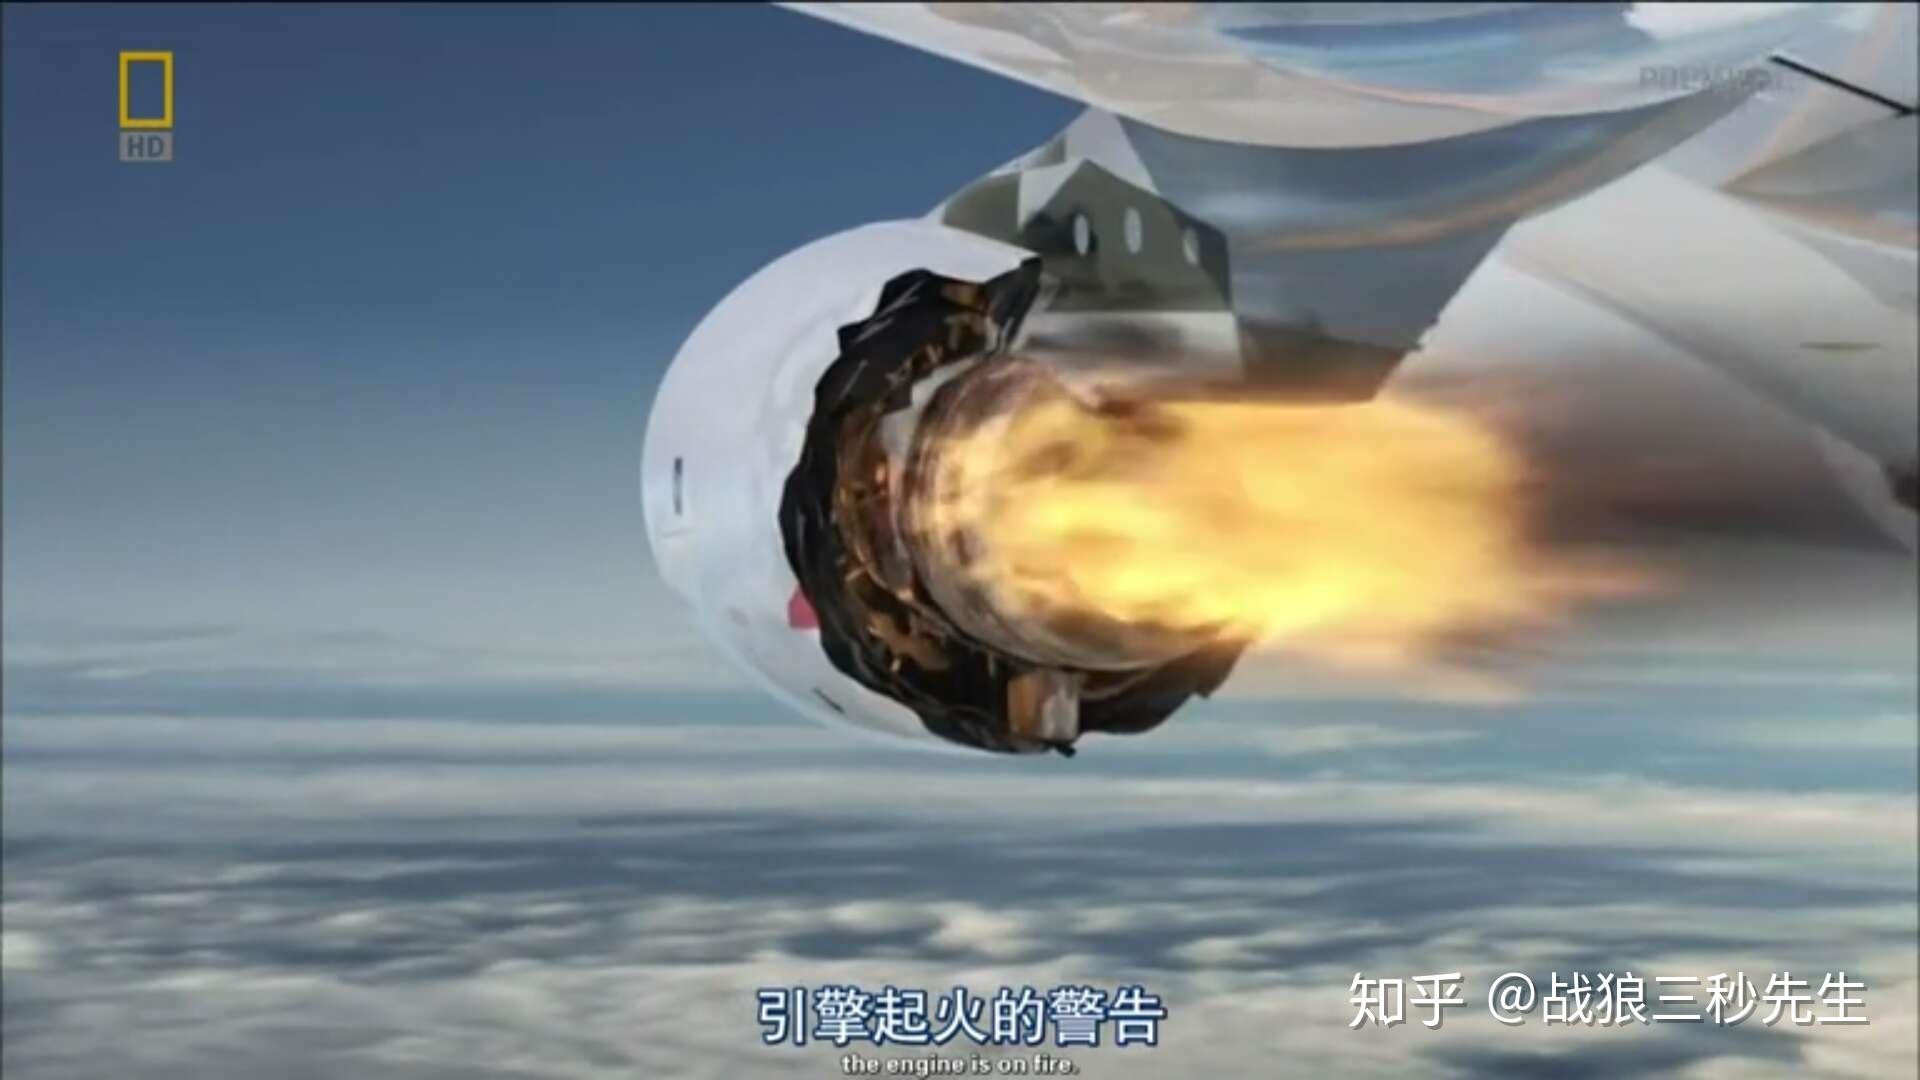 飞机发动机着火01视频素材,其它视频素材下载,高清3840X2160视频素材下载,凌点视频素材网,编号:142339